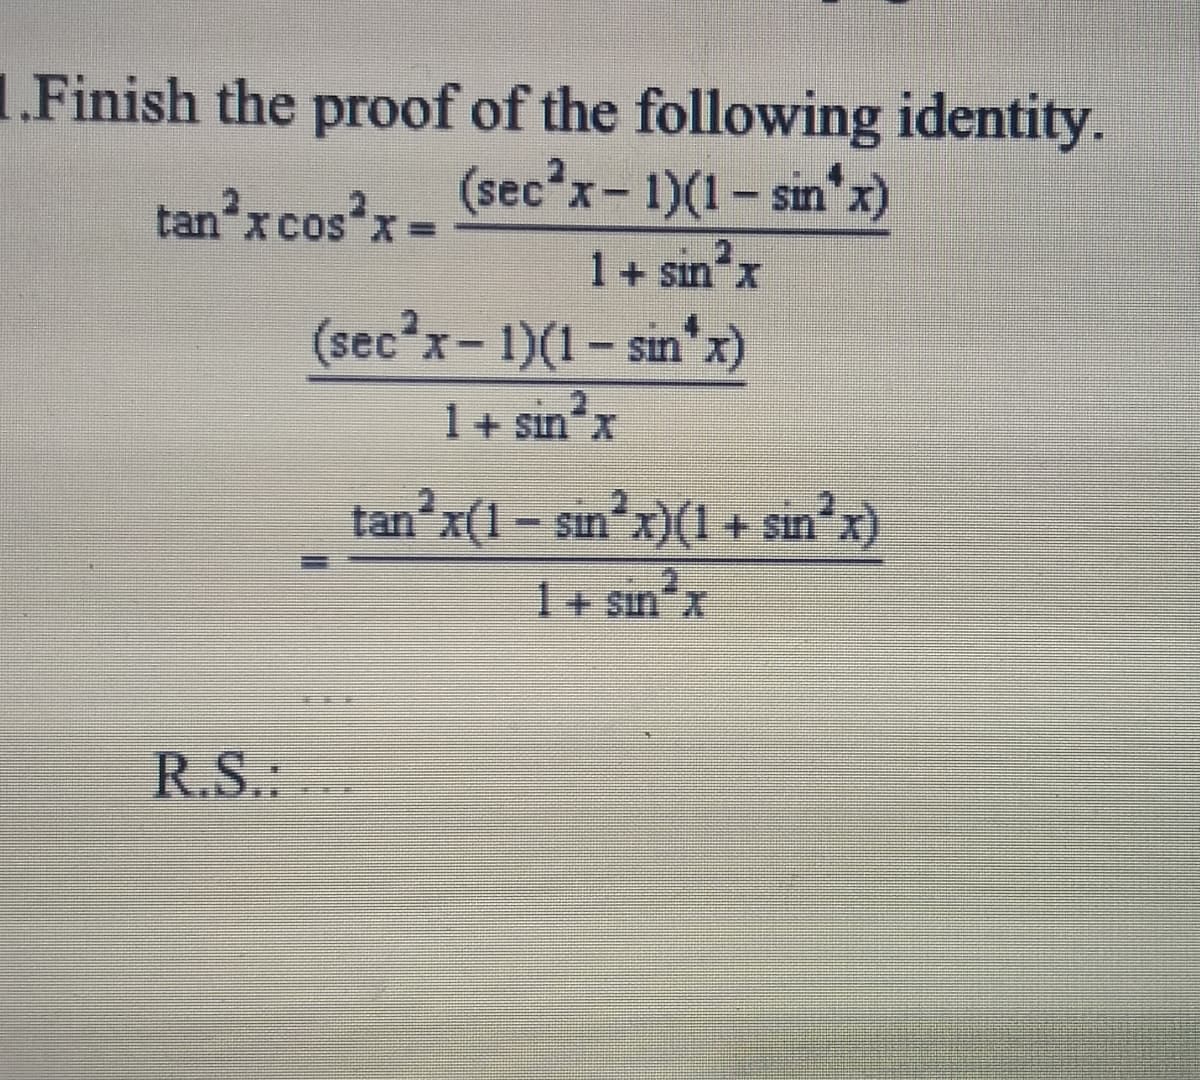 1.Finish the proof of the following identity.
(sec'x- 1)(1- sin x)
tan'x cos'x=
%3D
1+ sın x
(sec?x- 1)(1- sin x)
1+ sın"x
anʼx(1- sin'x)(1 + sin x)
I+ sın'x
X.
R.S.
